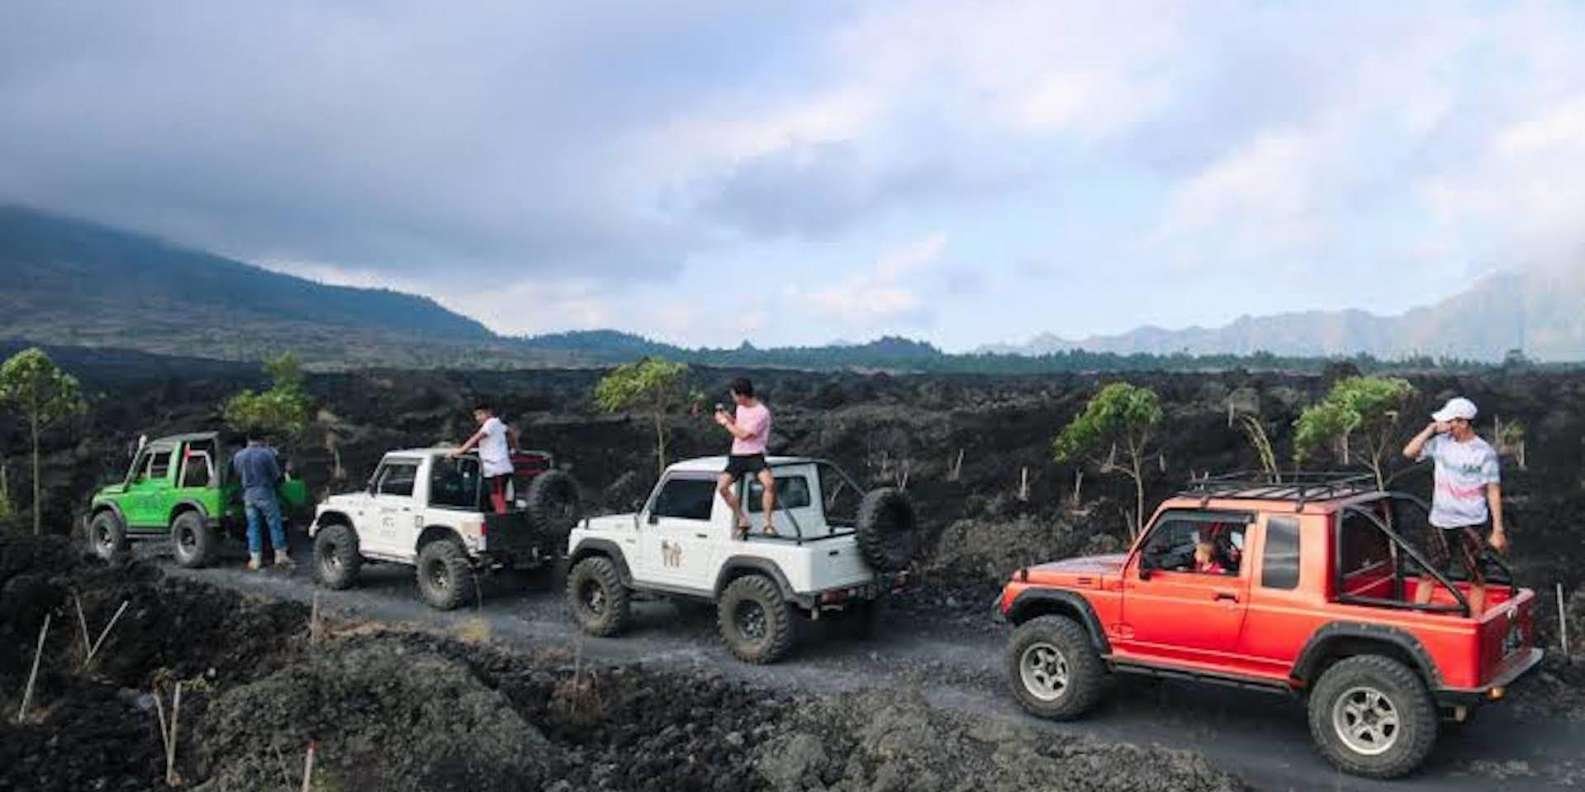 019-mt-batur-black-lava-jeep-tour-natural-hot-spring-7-t175089.jpg